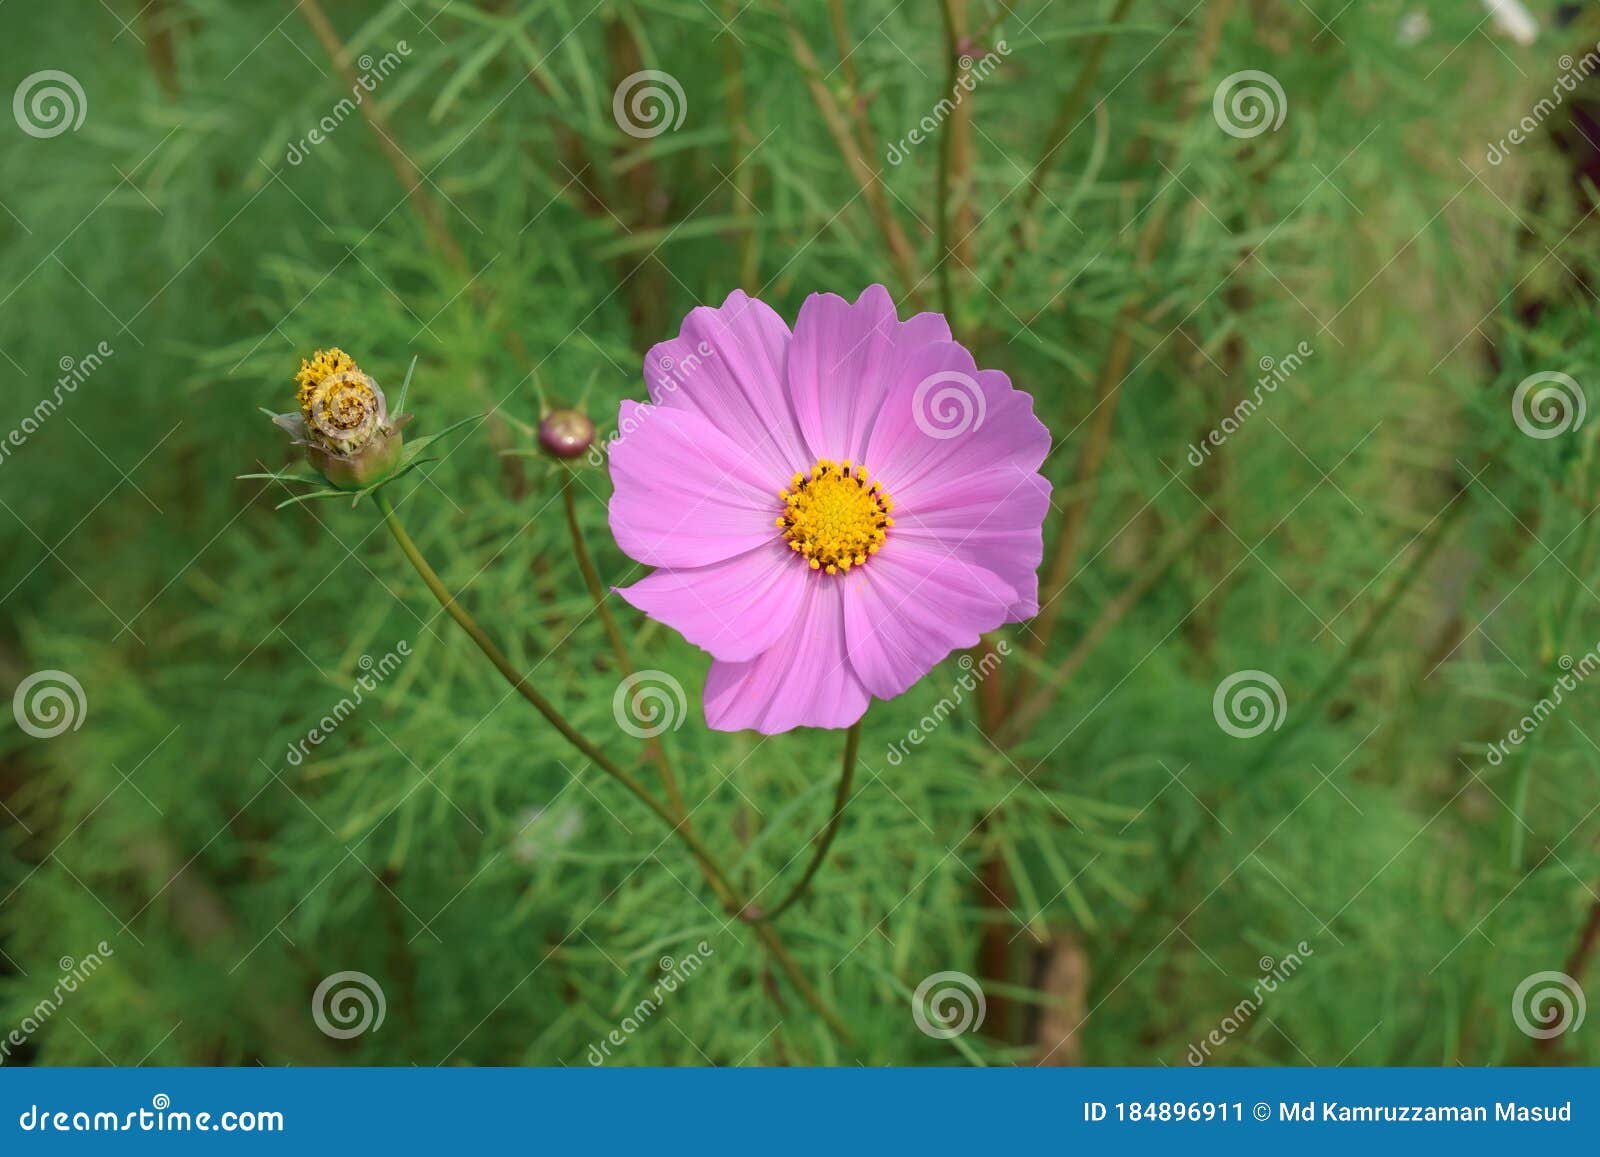 Imaginez La Fleur Rose De Cosmos Dans Le Jardin Image stock - Image du  croissance, trouvaille: 184896911